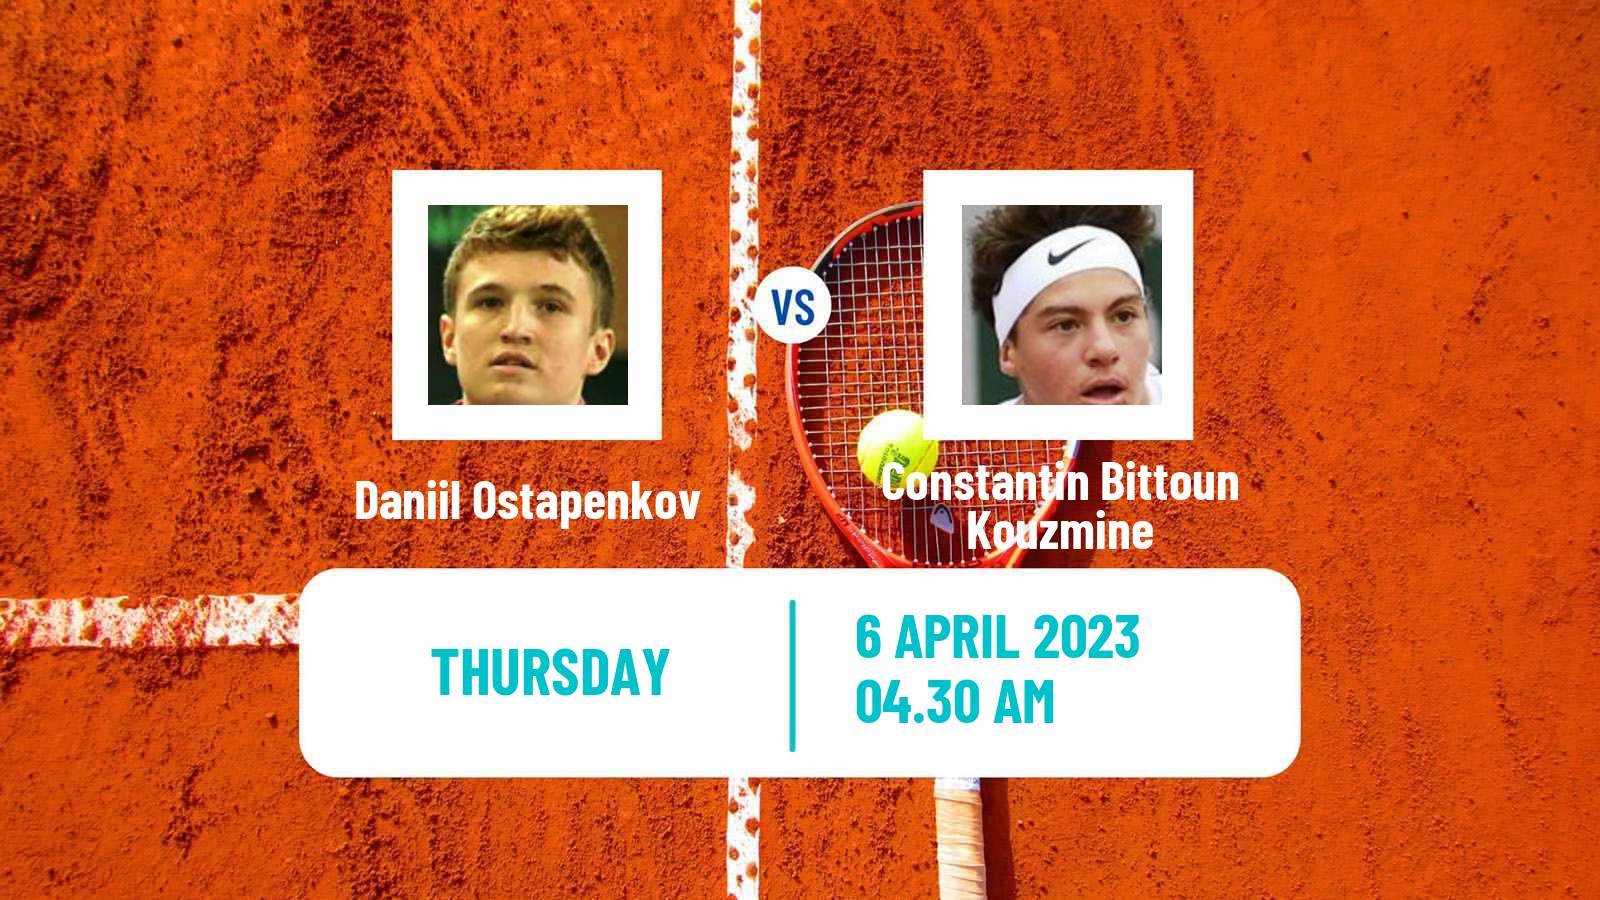 Tennis ITF Tournaments Daniil Ostapenkov - Constantin Bittoun Kouzmine